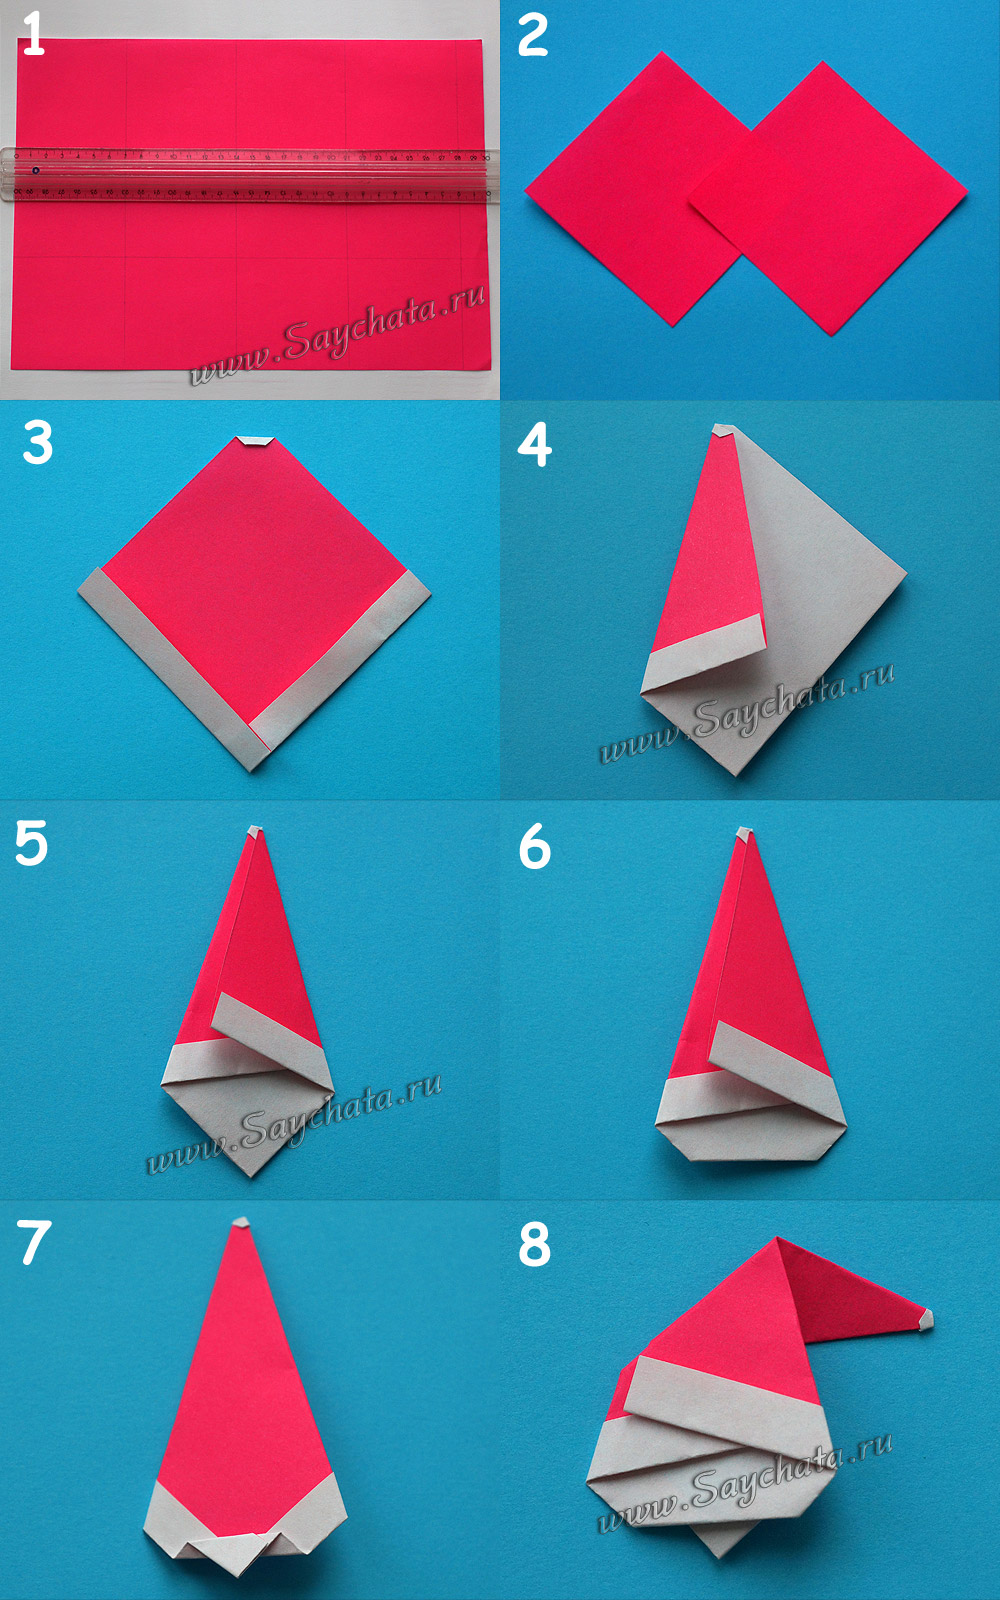 ded_moroz_origami_1.JPG